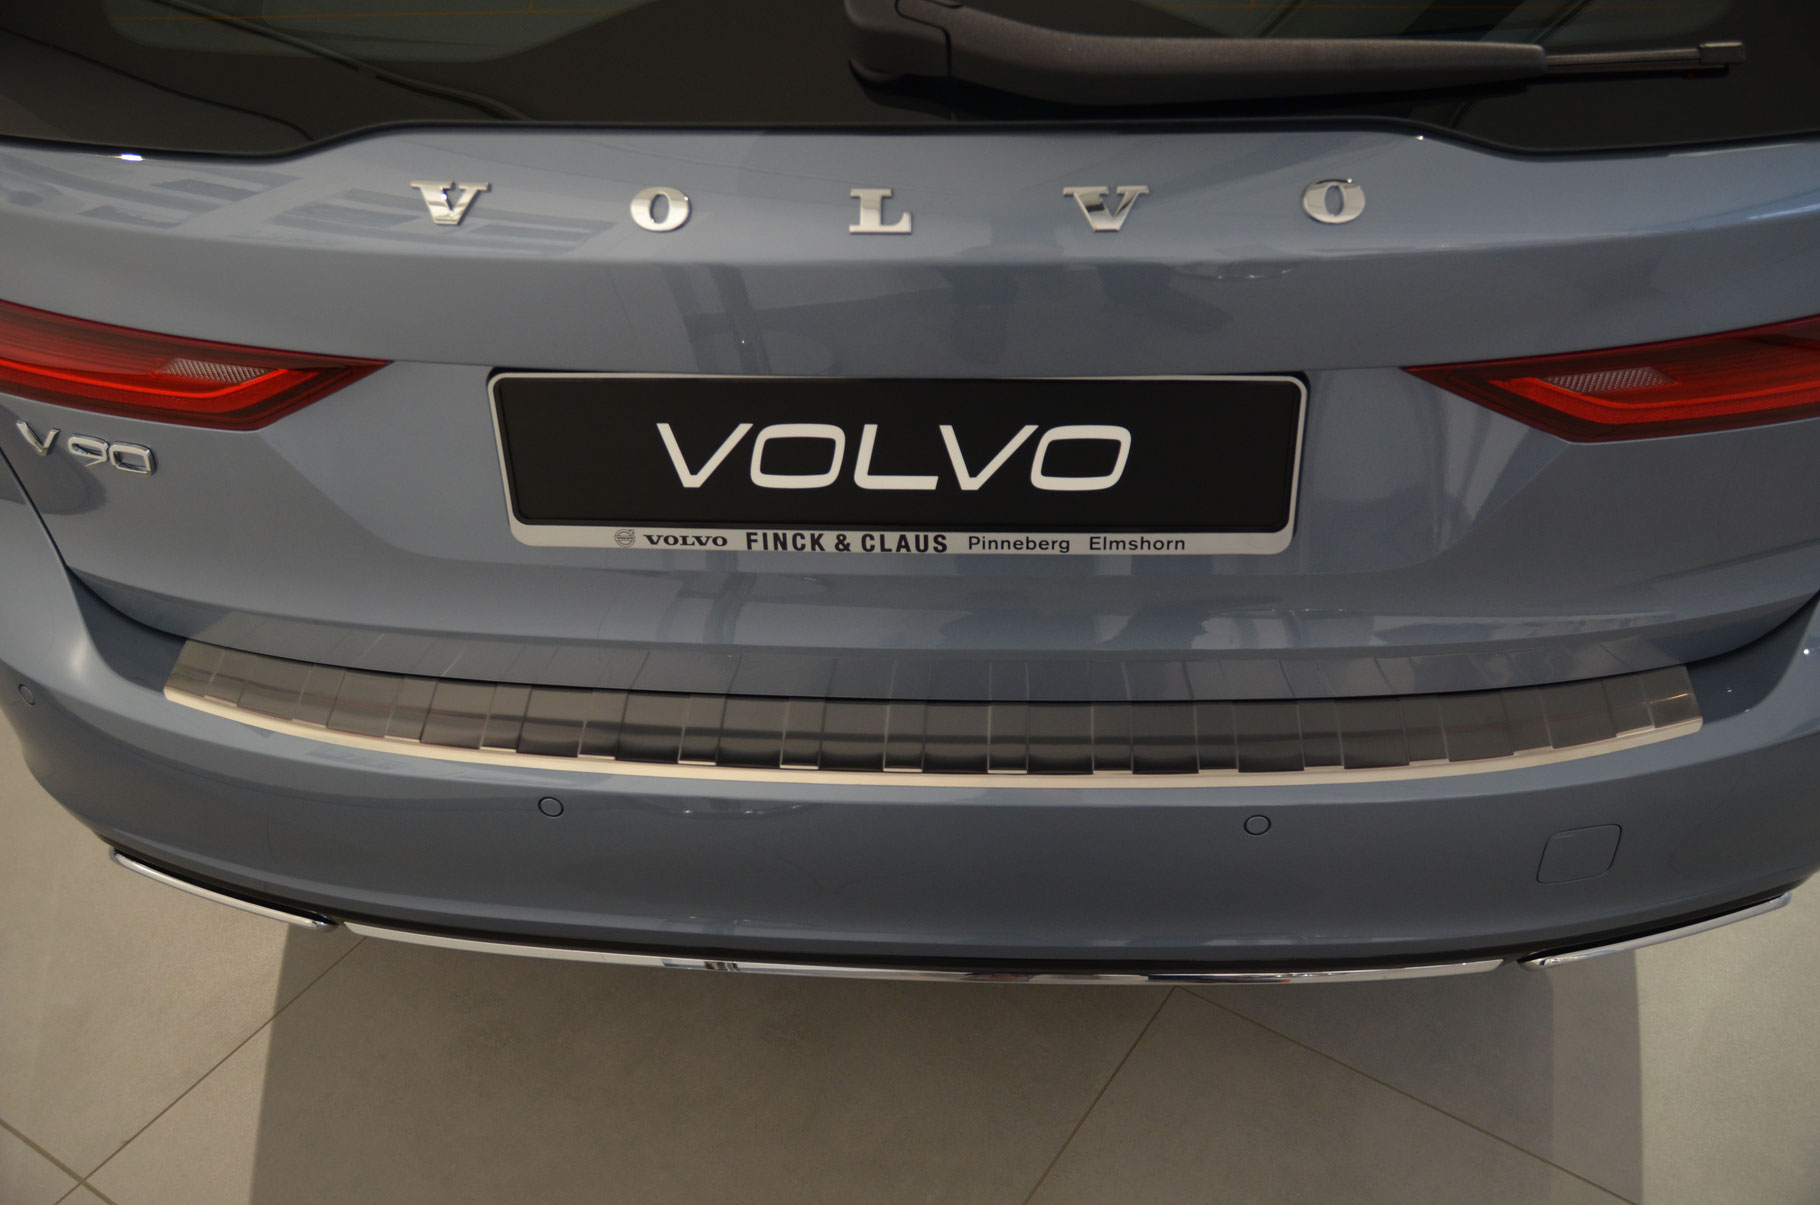 Vovlo V90 - Schutz Ihres Fahrzeuges die für Ladekante